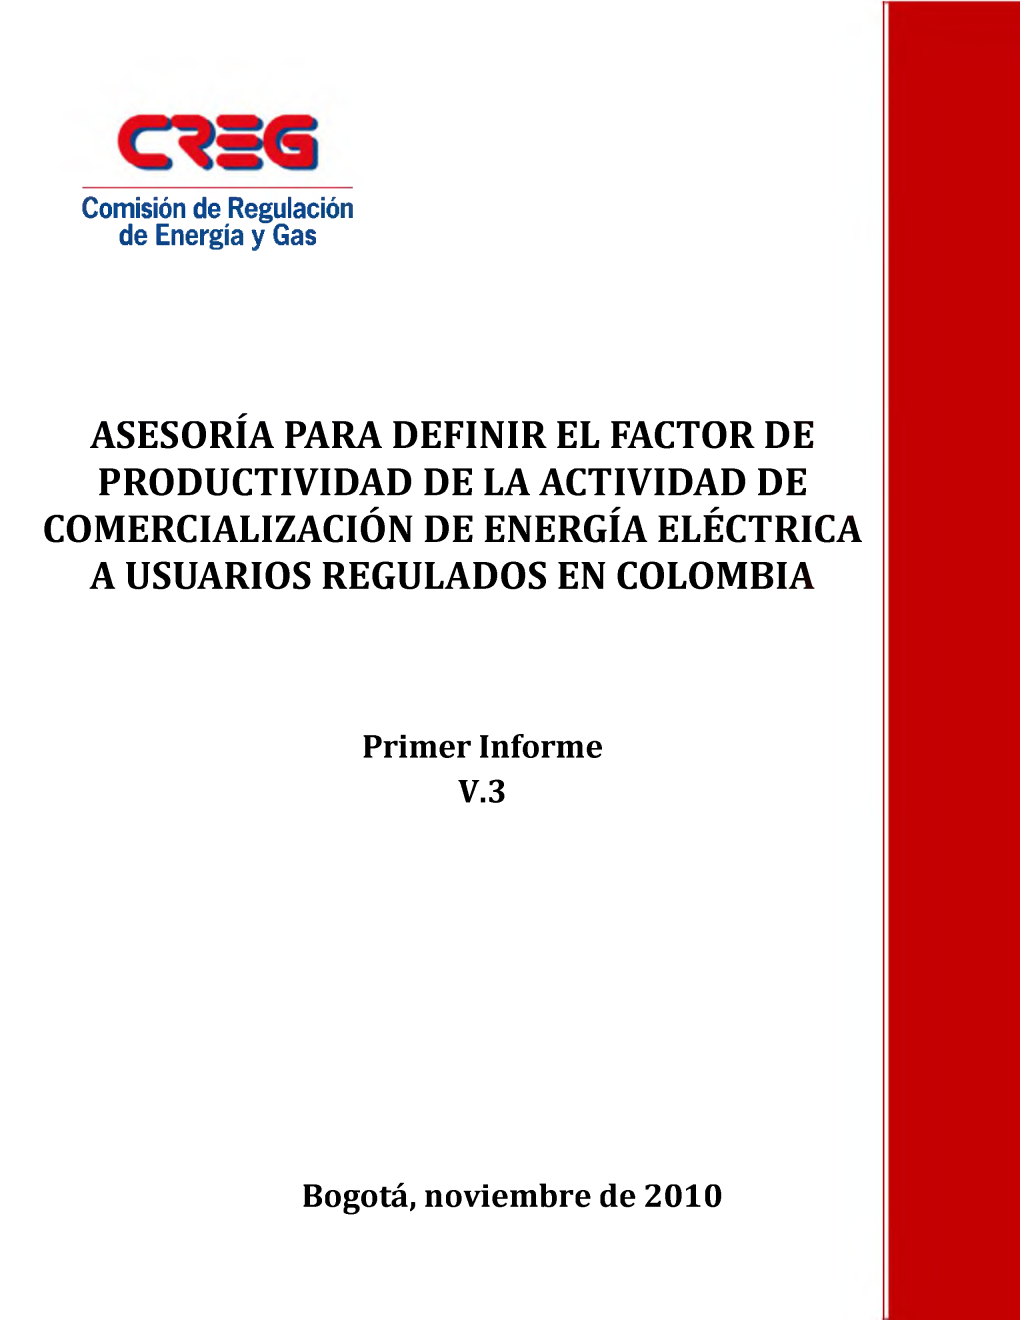 Asesoría Para Definir El Factor De Productividad De La Actividad De Comercialización De Energía Eléctrica a Usuarios Regulados En Colombia